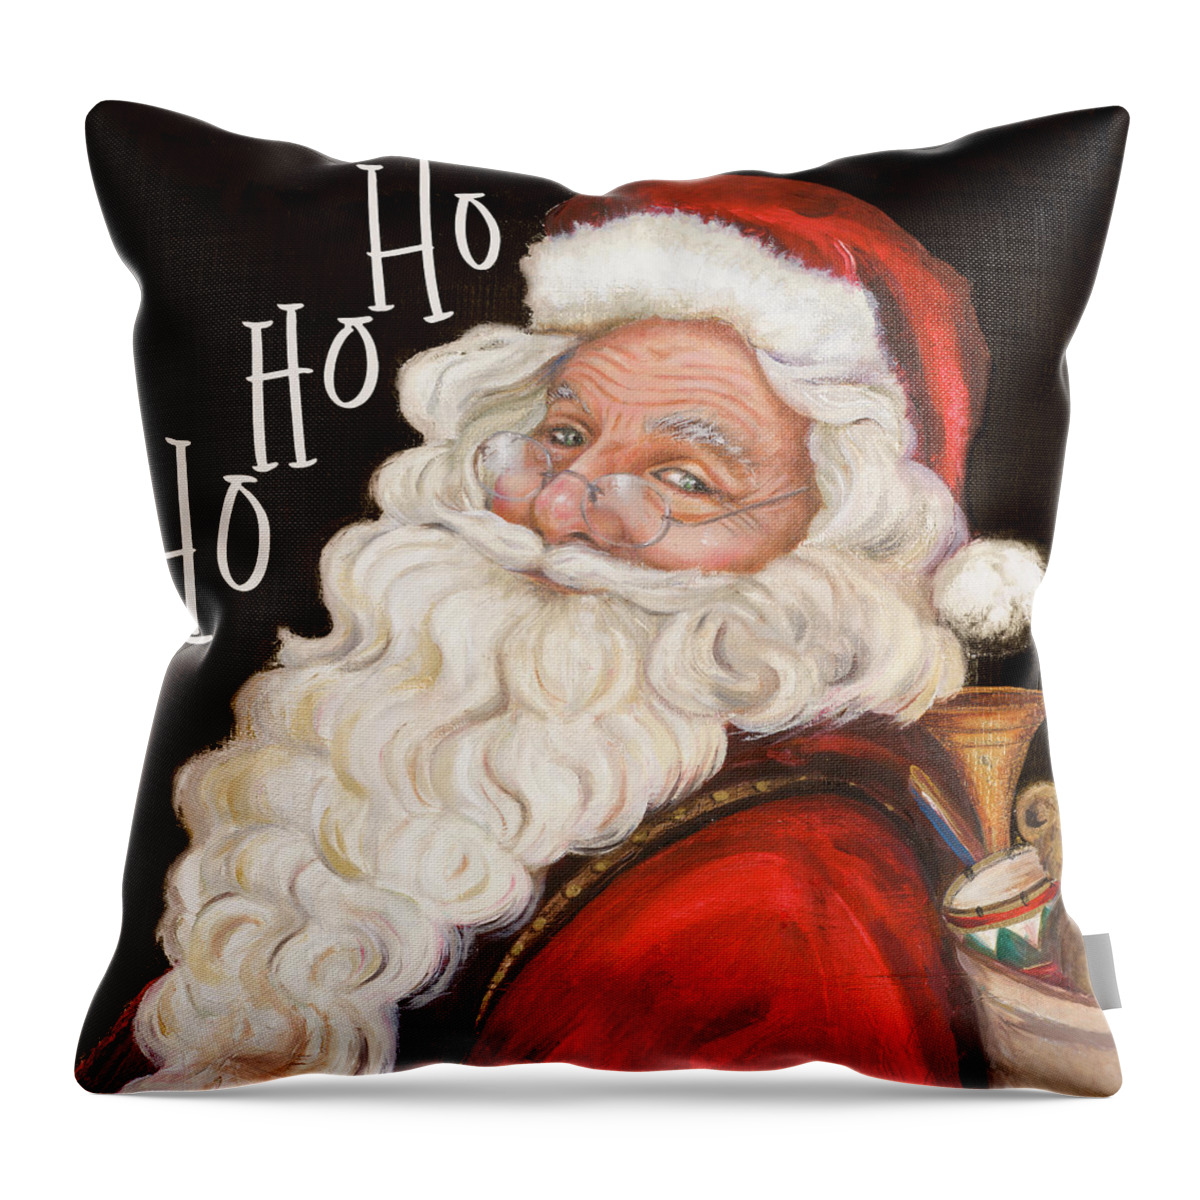 Santa Throw Pillow featuring the mixed media Smiling Santa Ho Ho Ho by Patricia Pinto